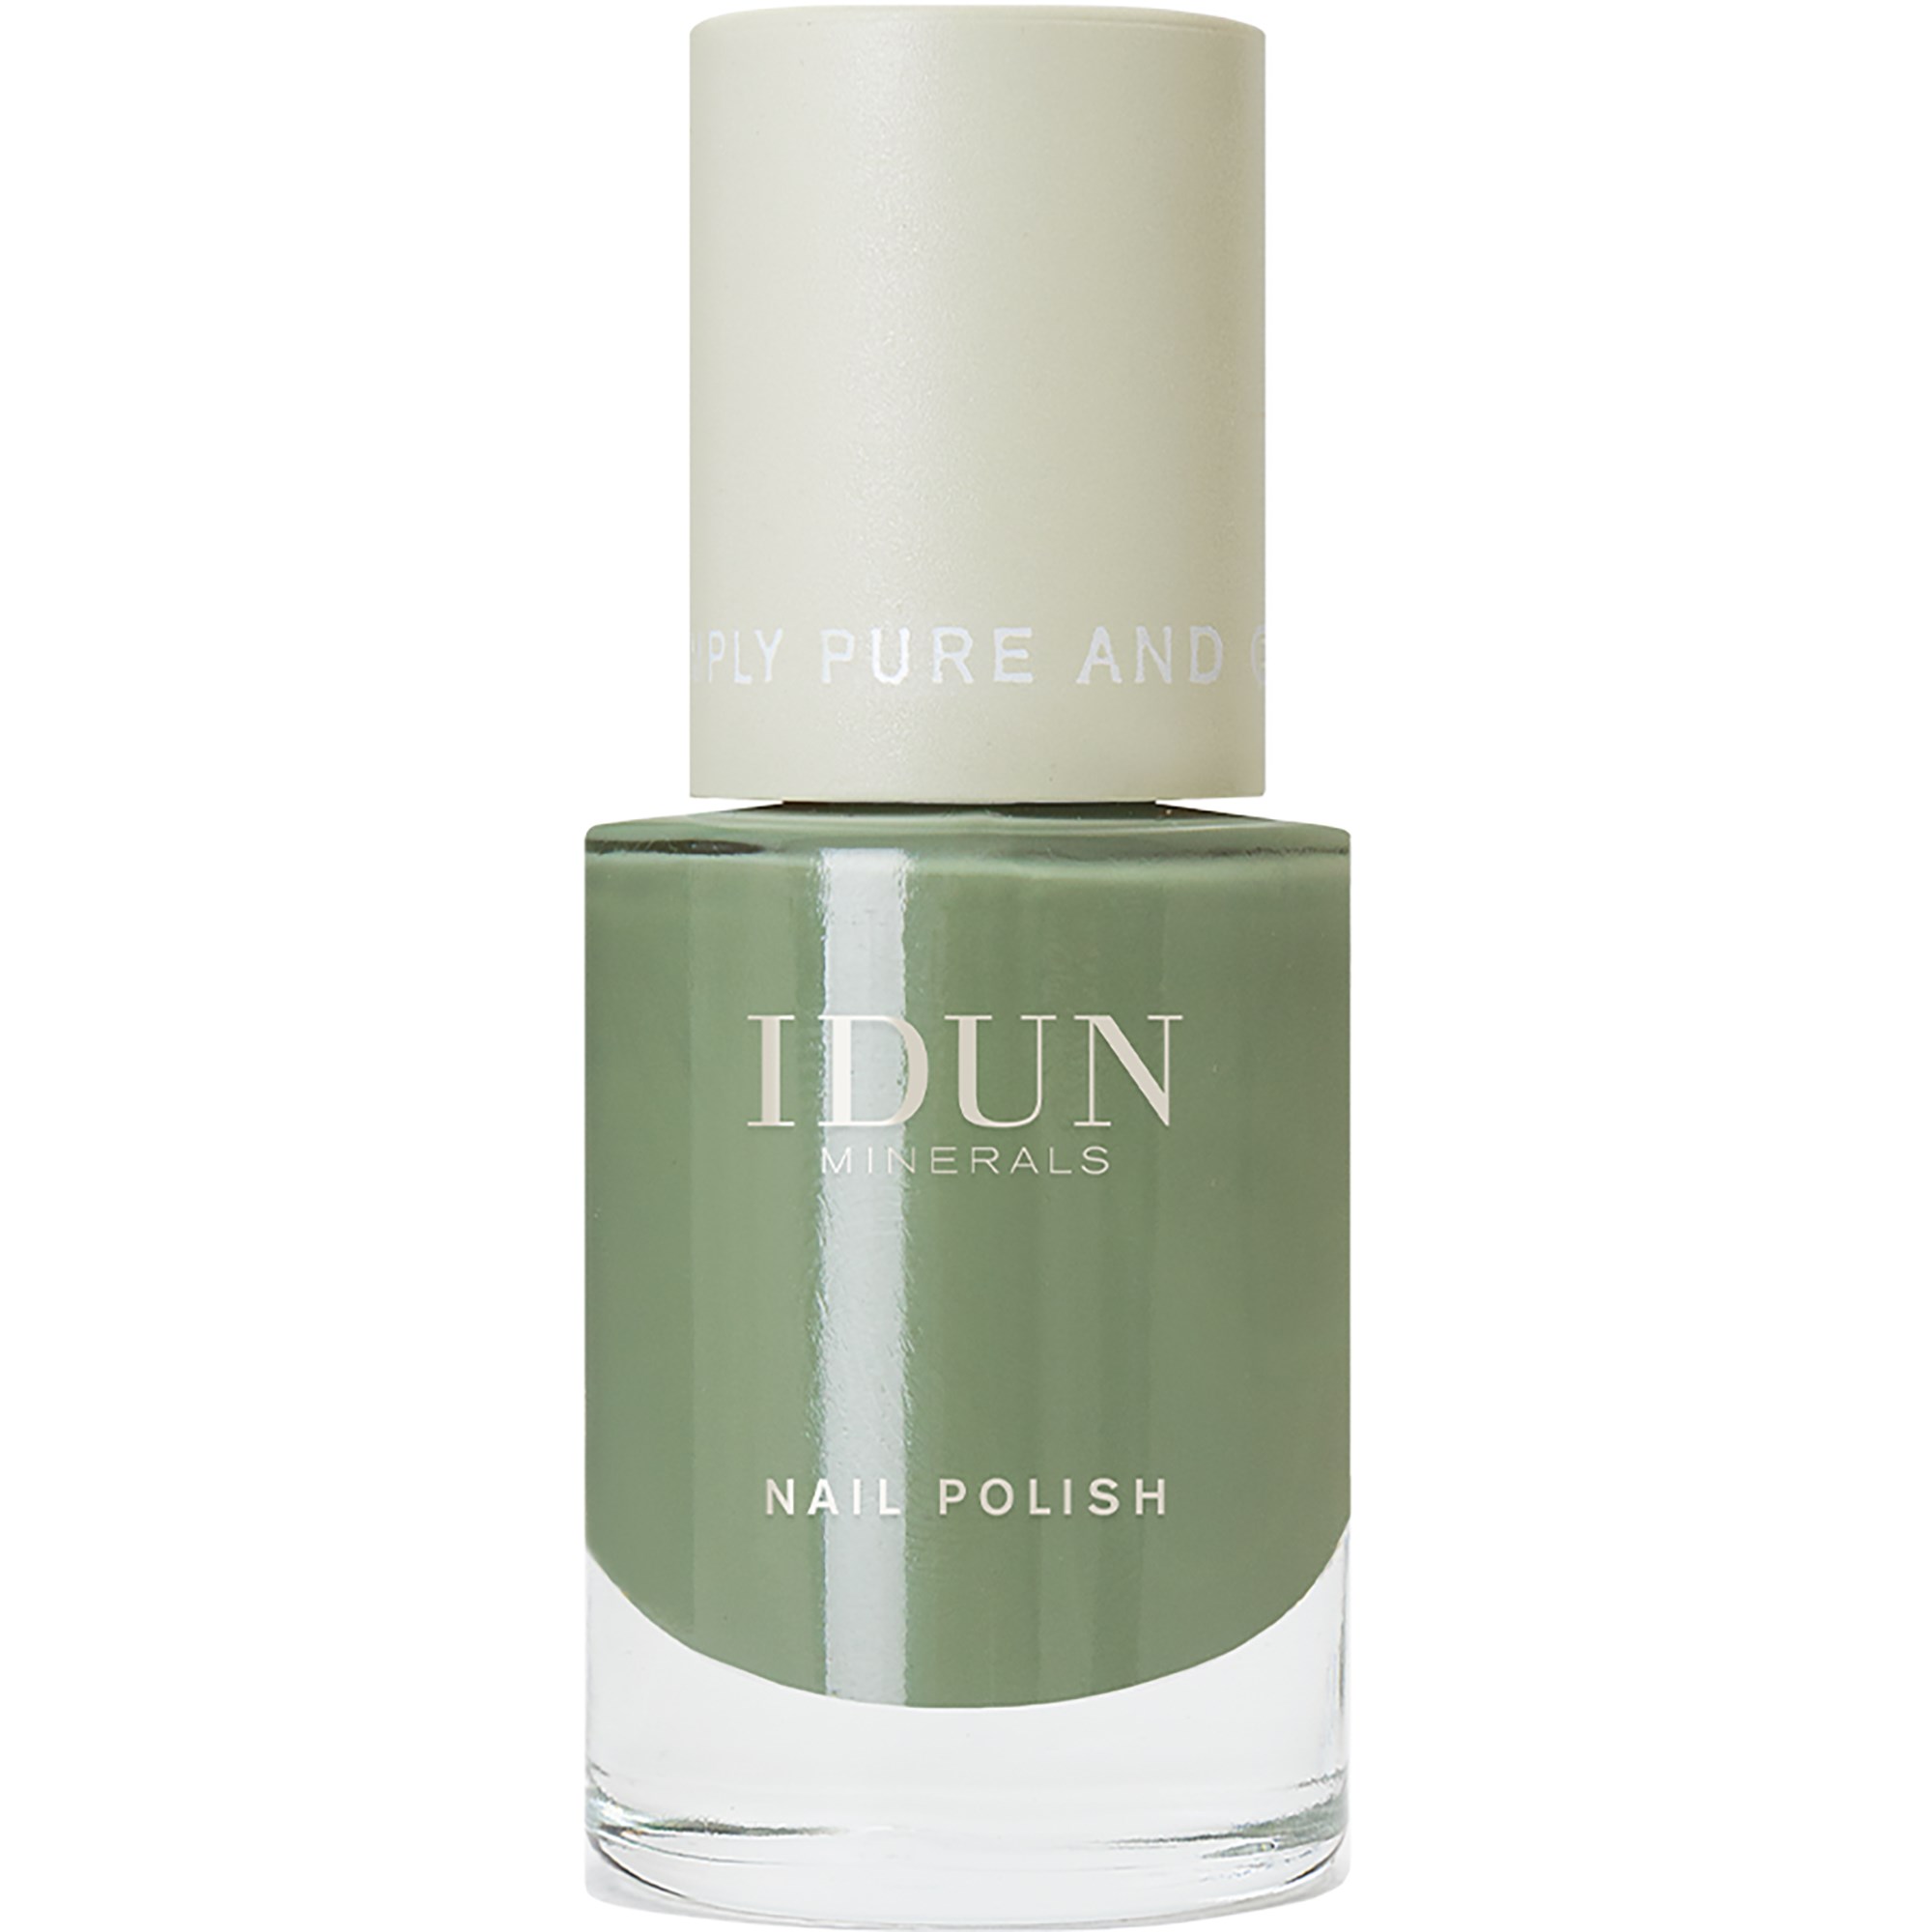 IDUN Minerals Nail Polish Jade